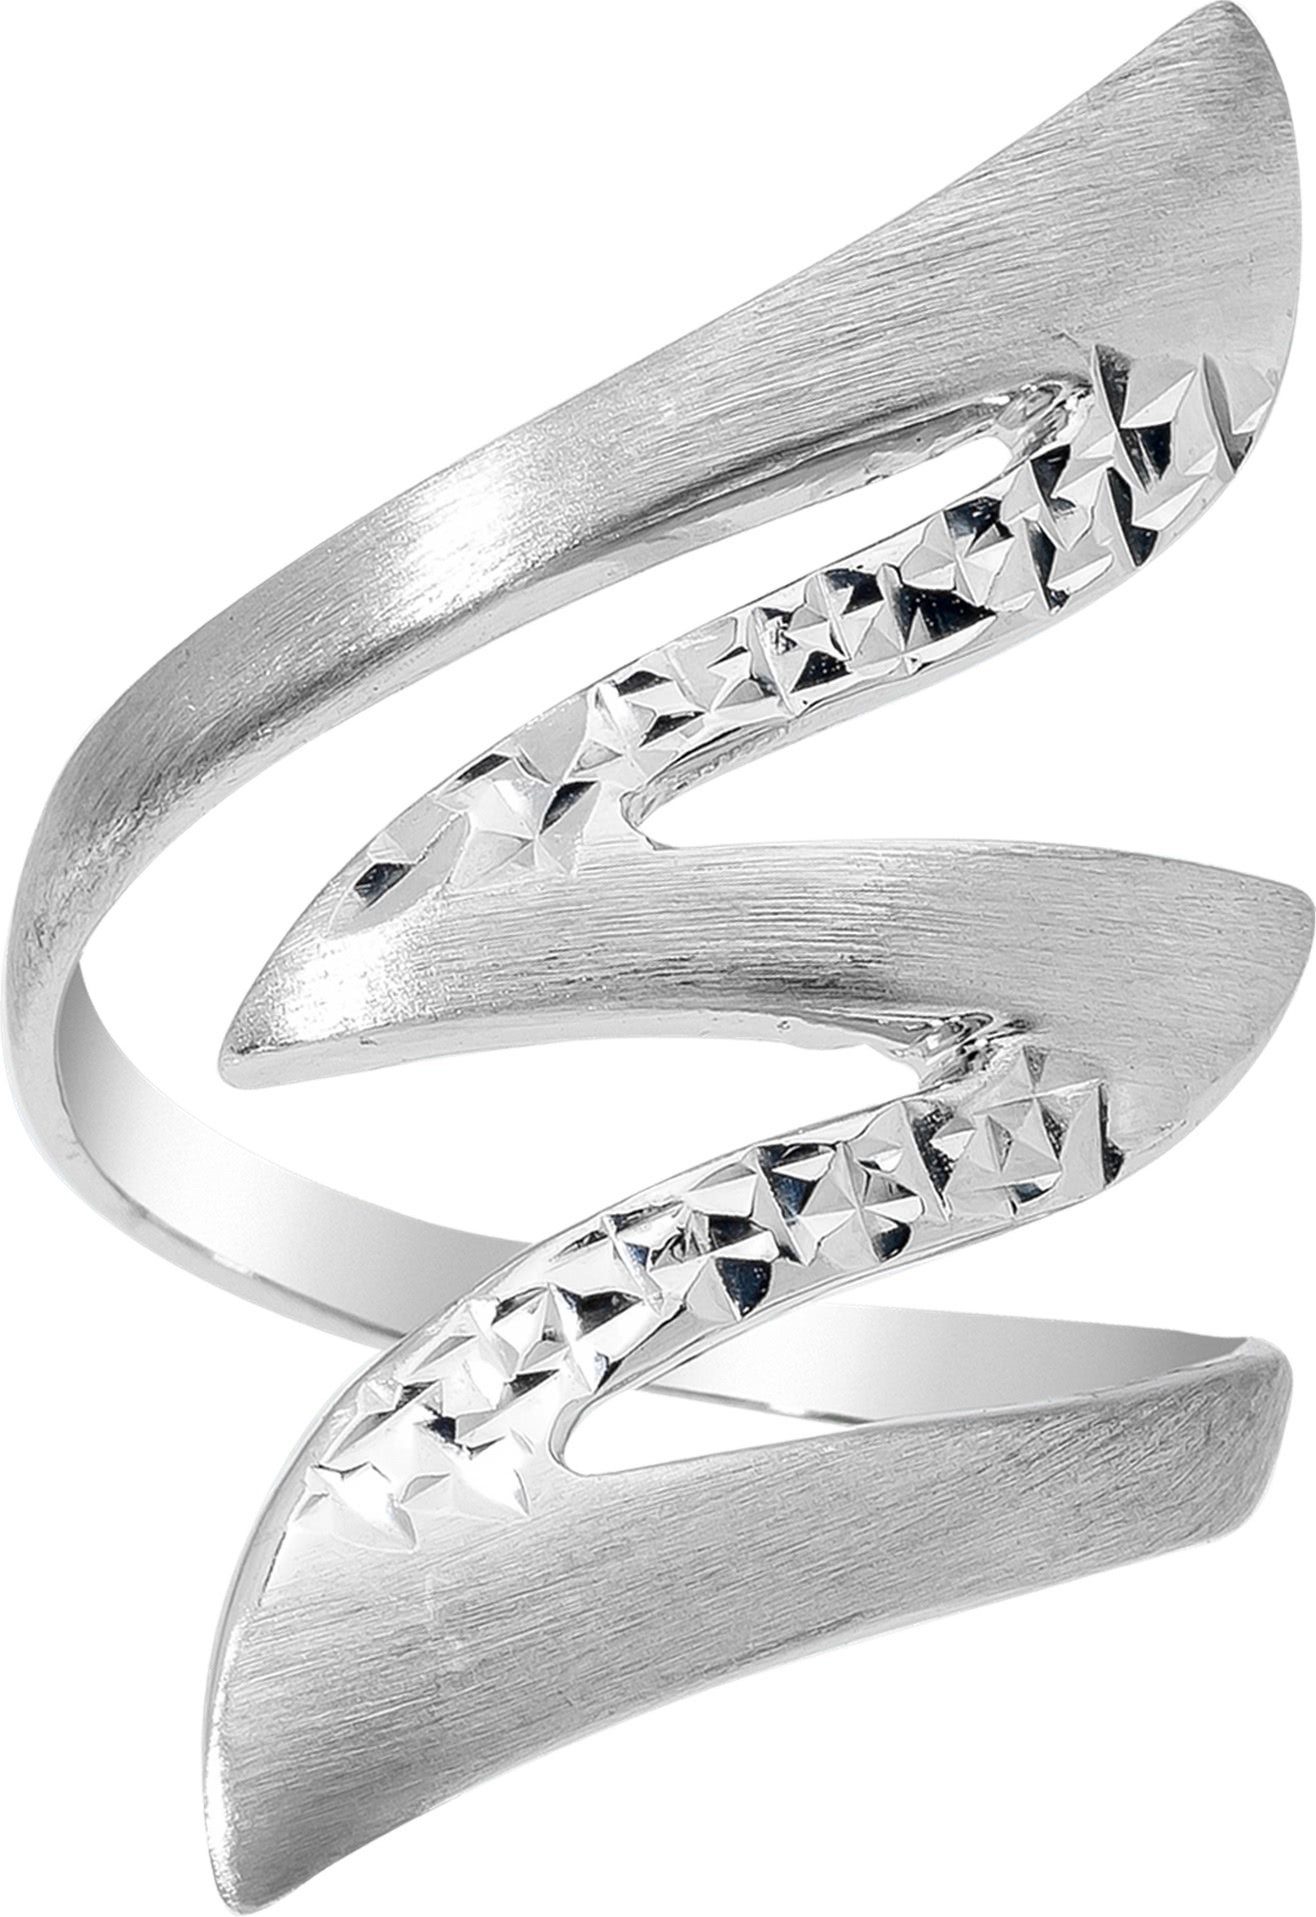 Balia Silberring Balia Ring für Damen mit diamantierter (Fingerring), Fingerring Größe 52 (16,6), 925 Sterling Silber (Blitz) Silber 925